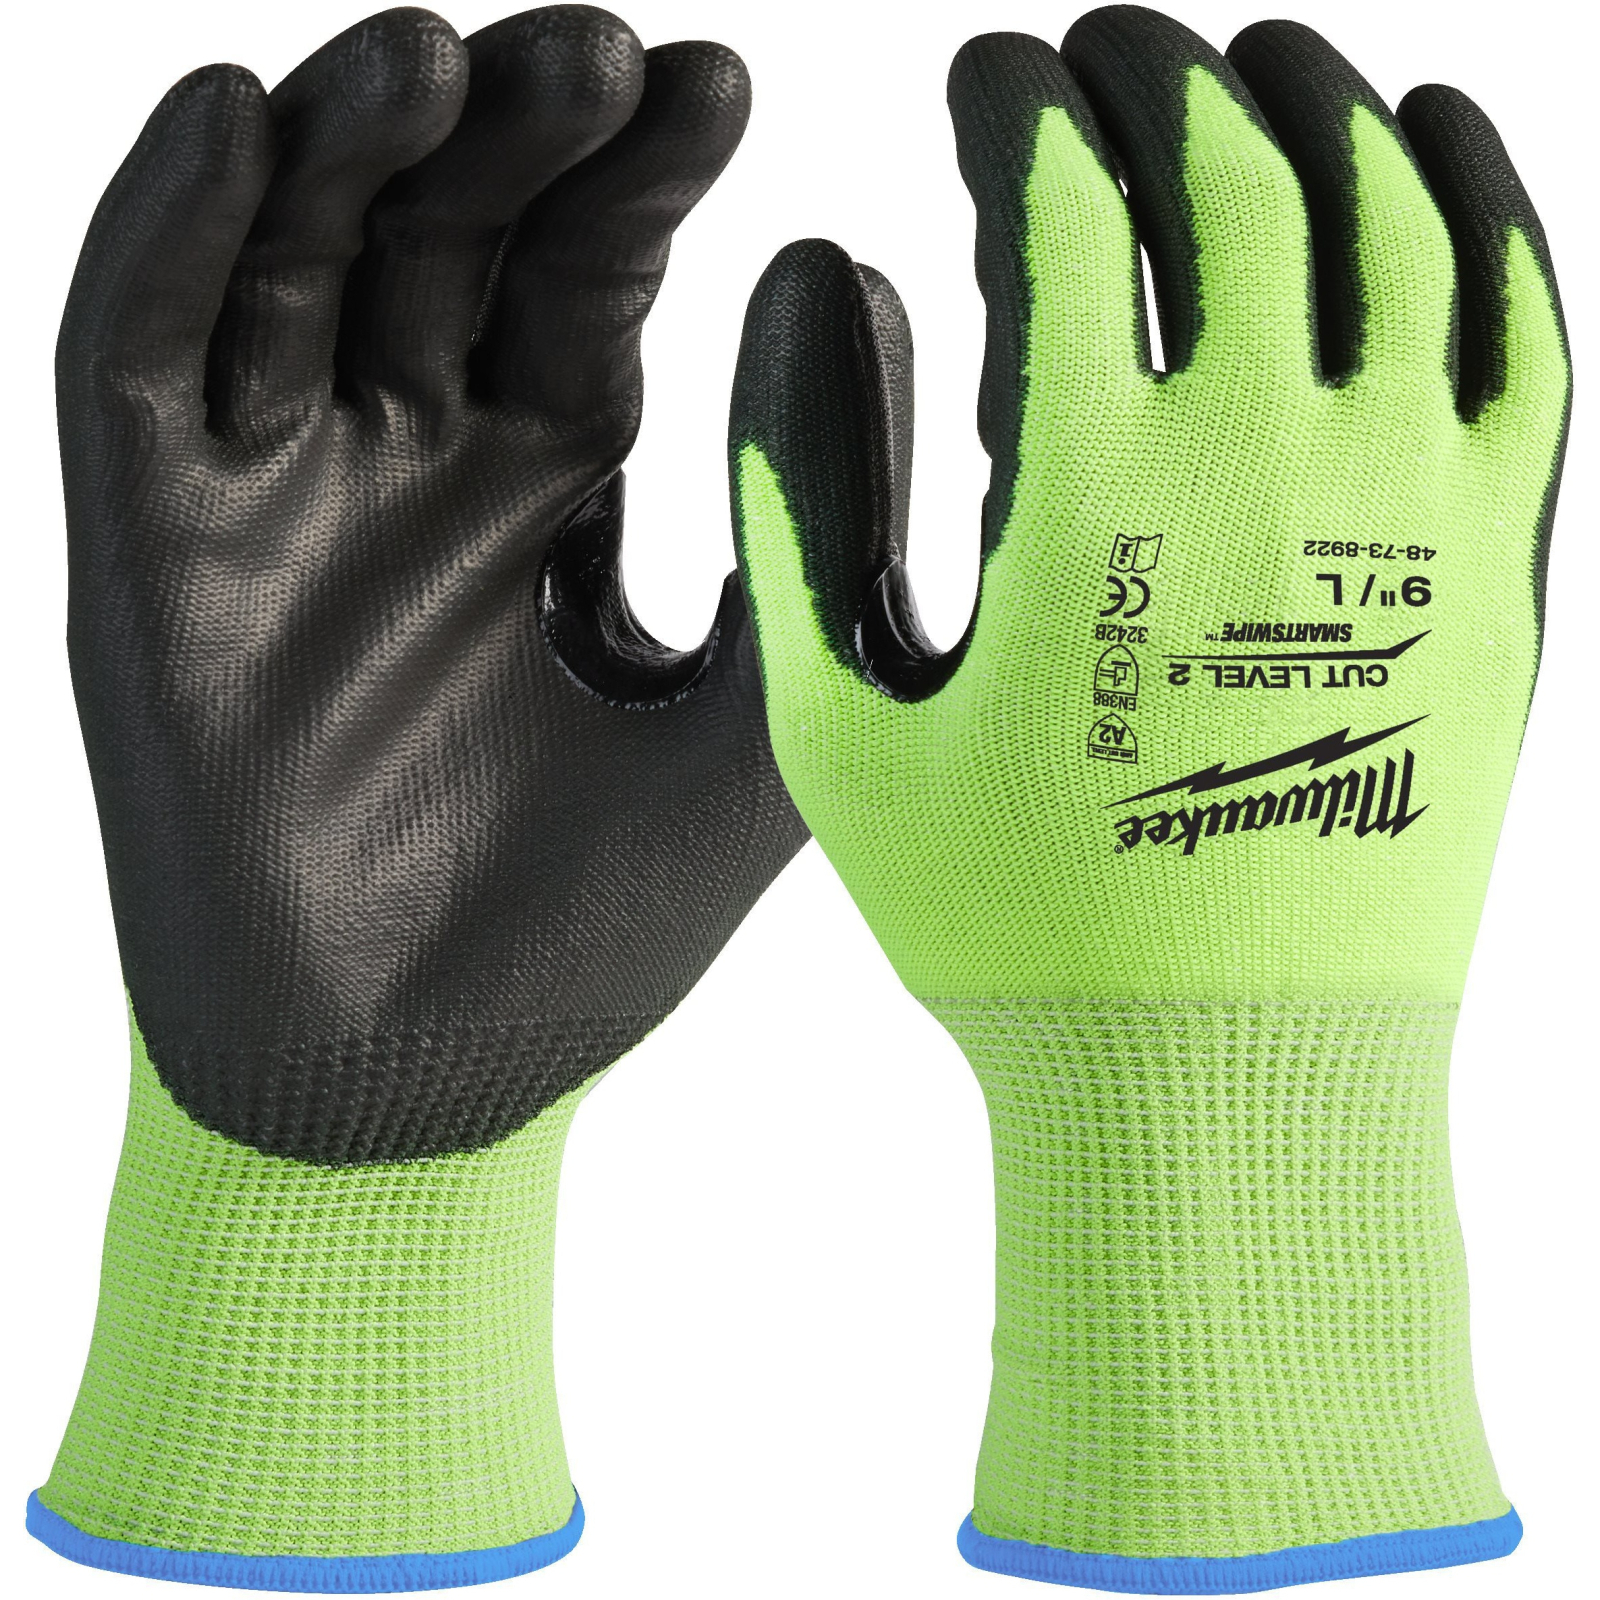 Защитные перчатки Milwaukee сигнальные с уровнем сопротивления порезам 2, XL/10 (4932479924)